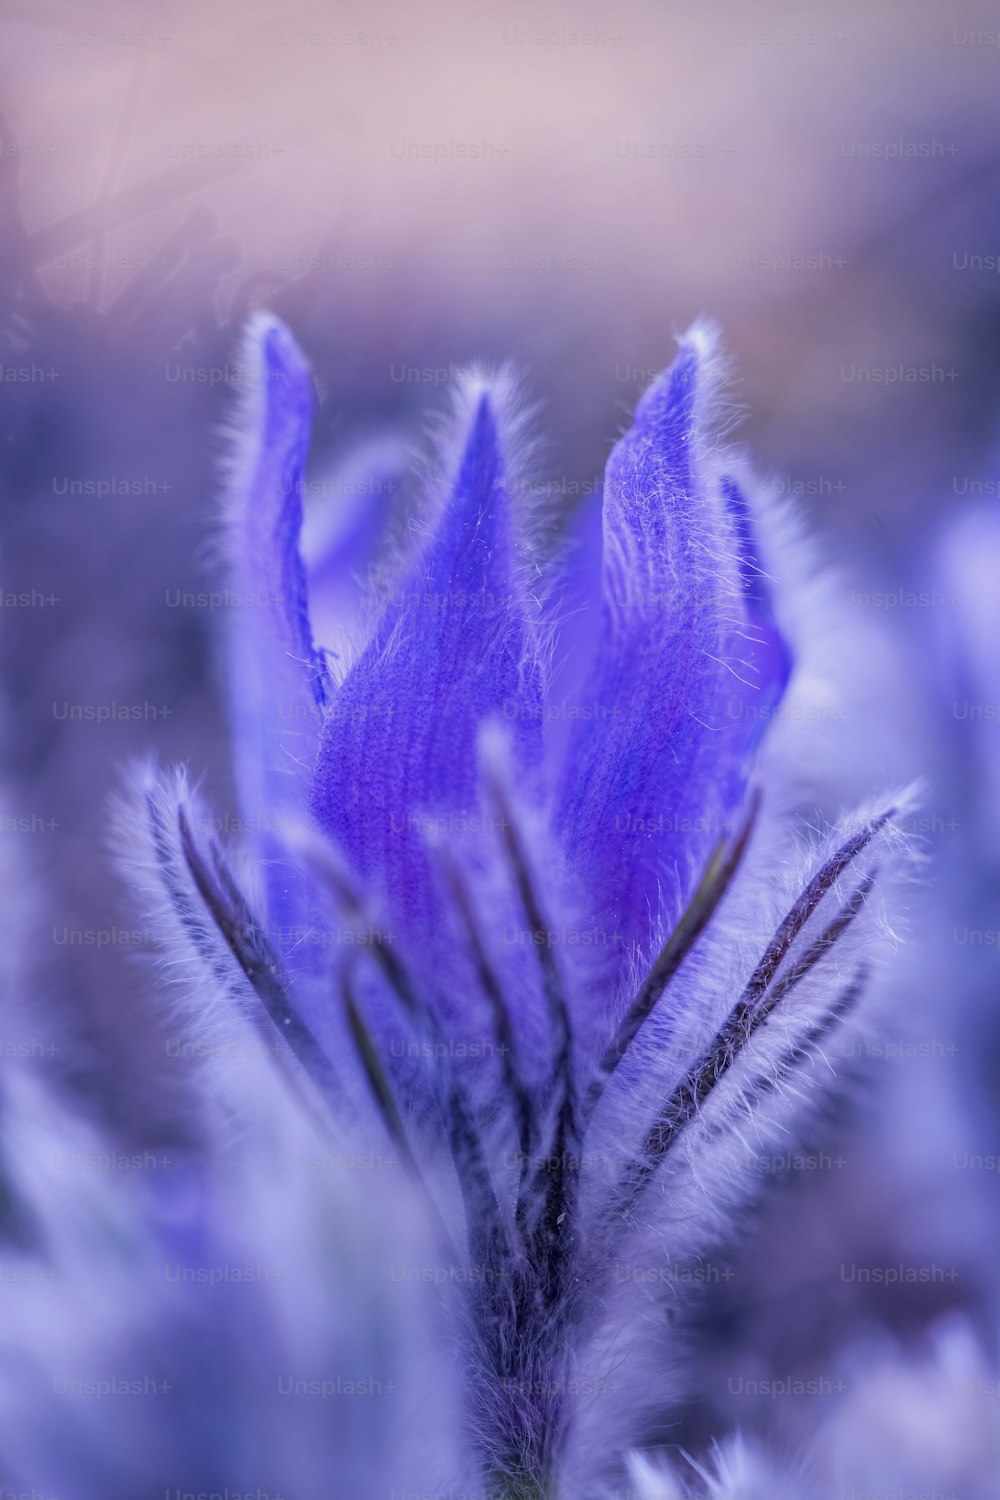 Un primer plano de una flor púrpura con fondo borroso